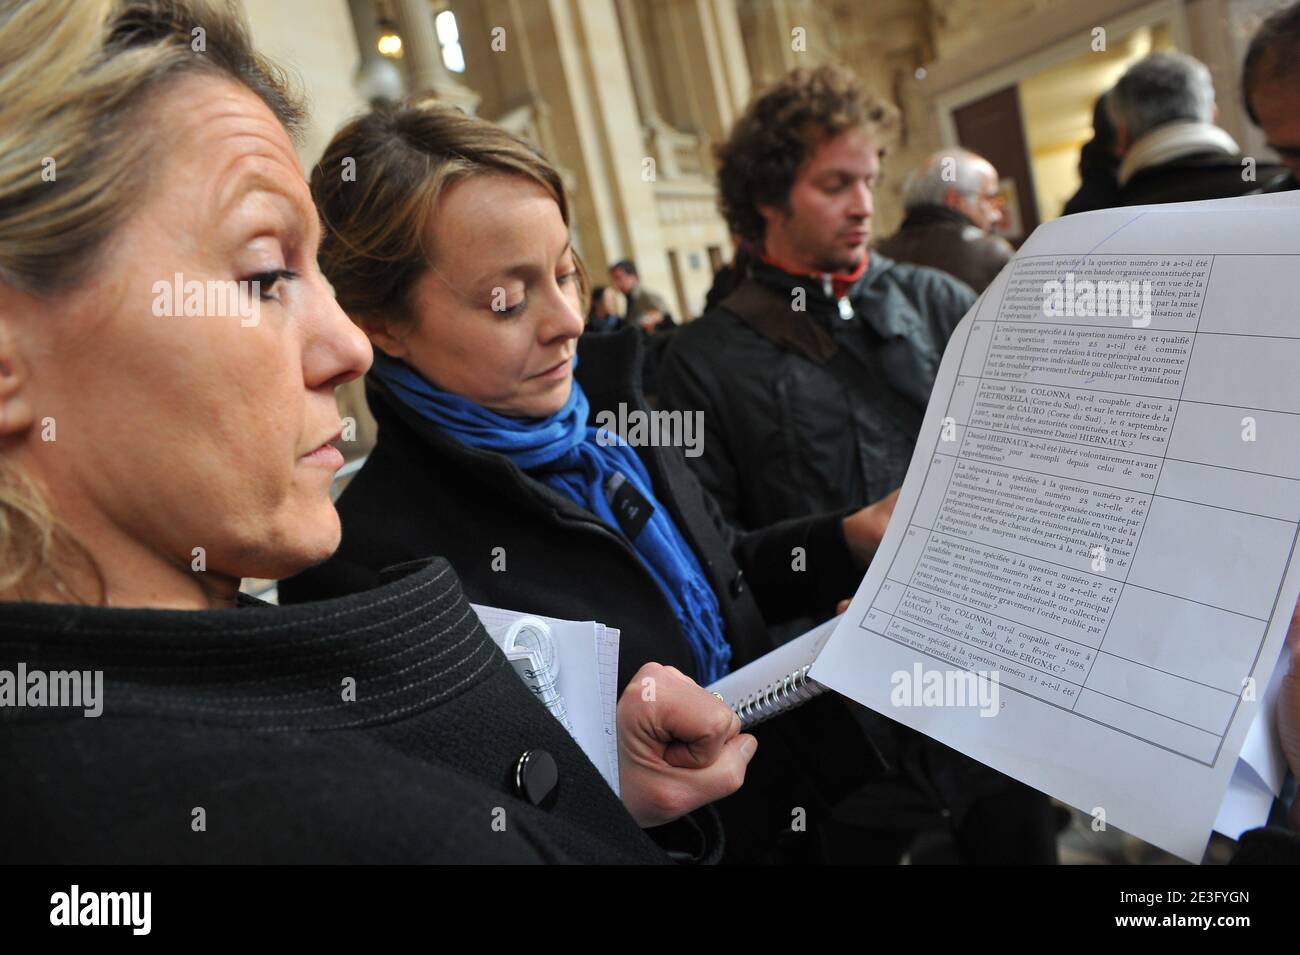 Les journalistes lisant les questions qui seront poses a la cour dont la 31eme 'L'accuse Yvan Colonna est-il ..... ' apres le verdict, a Paris, France, le 27 Mars 2009. Photo by Mousse/ABACAPRESS.COM Stock Photo